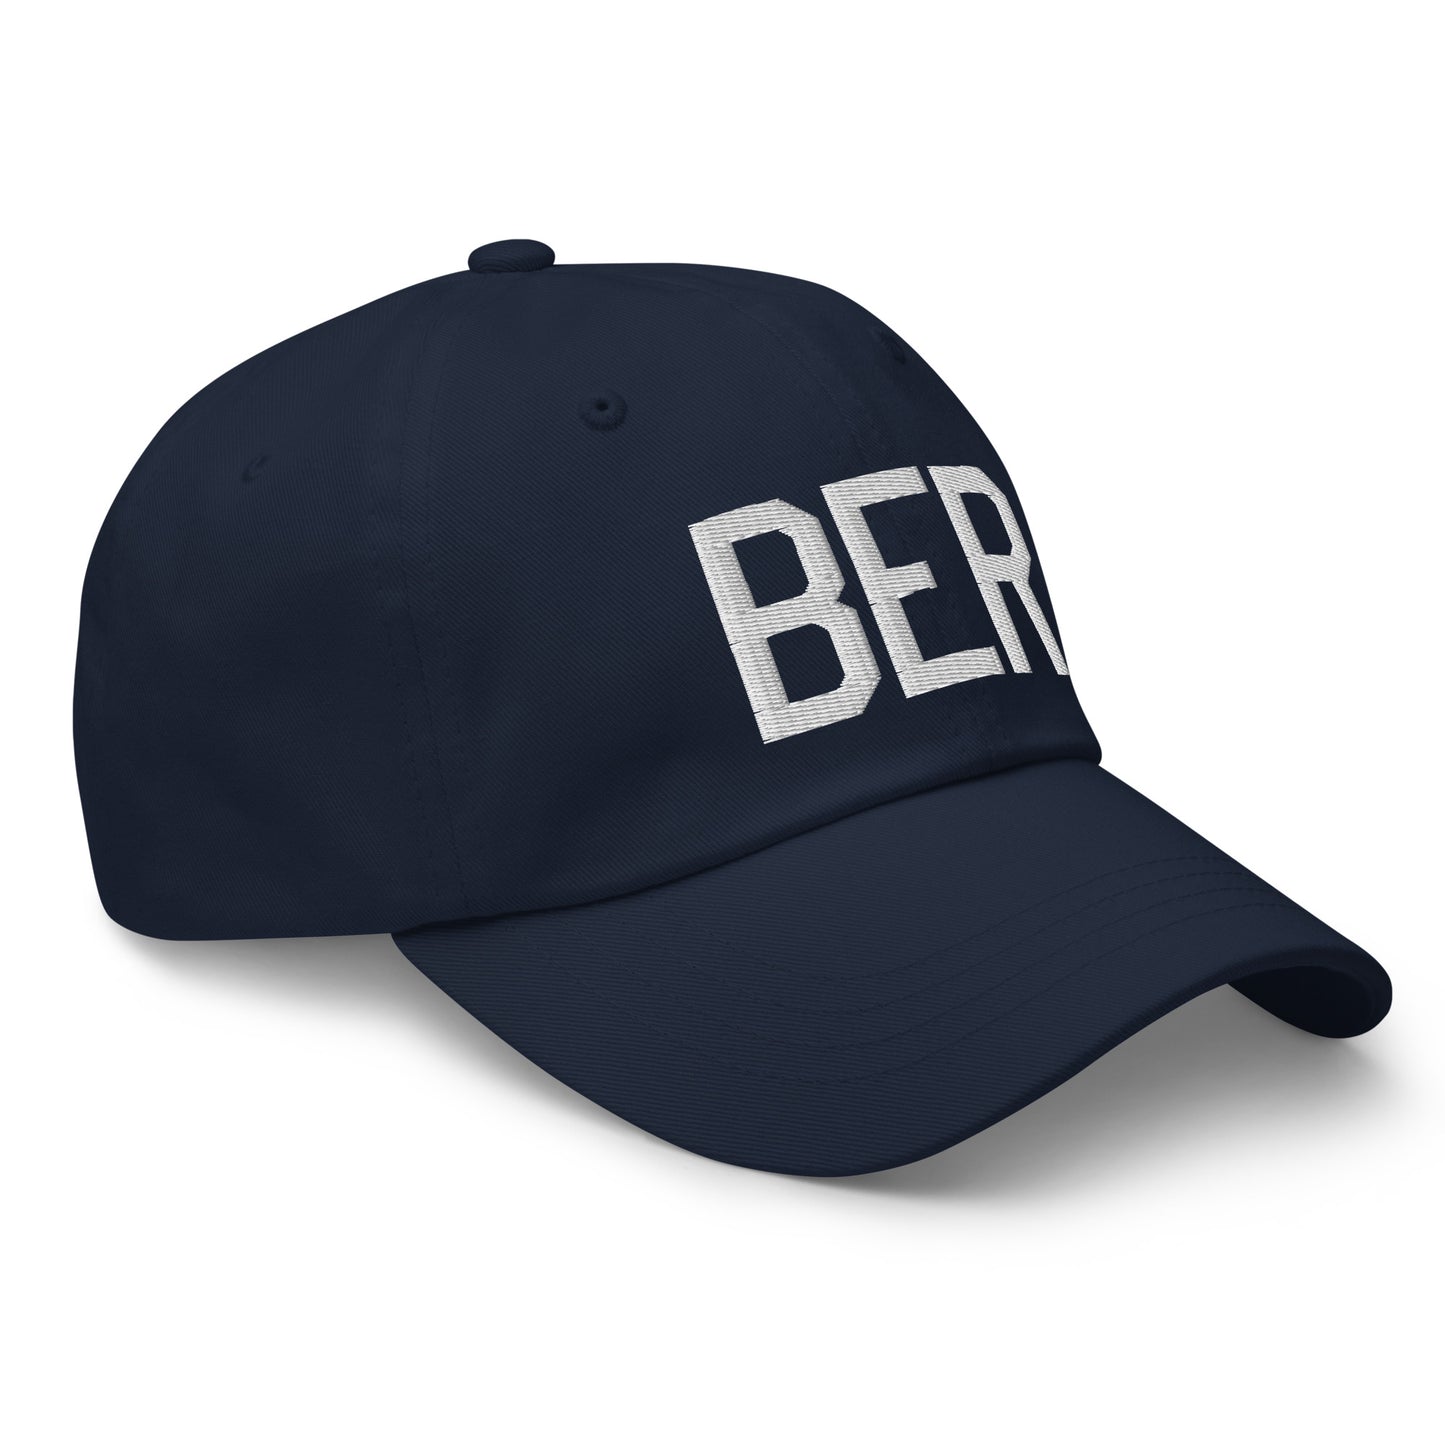 Airport Code Baseball Cap - White • BER Berlin • YHM Designs - Image 17